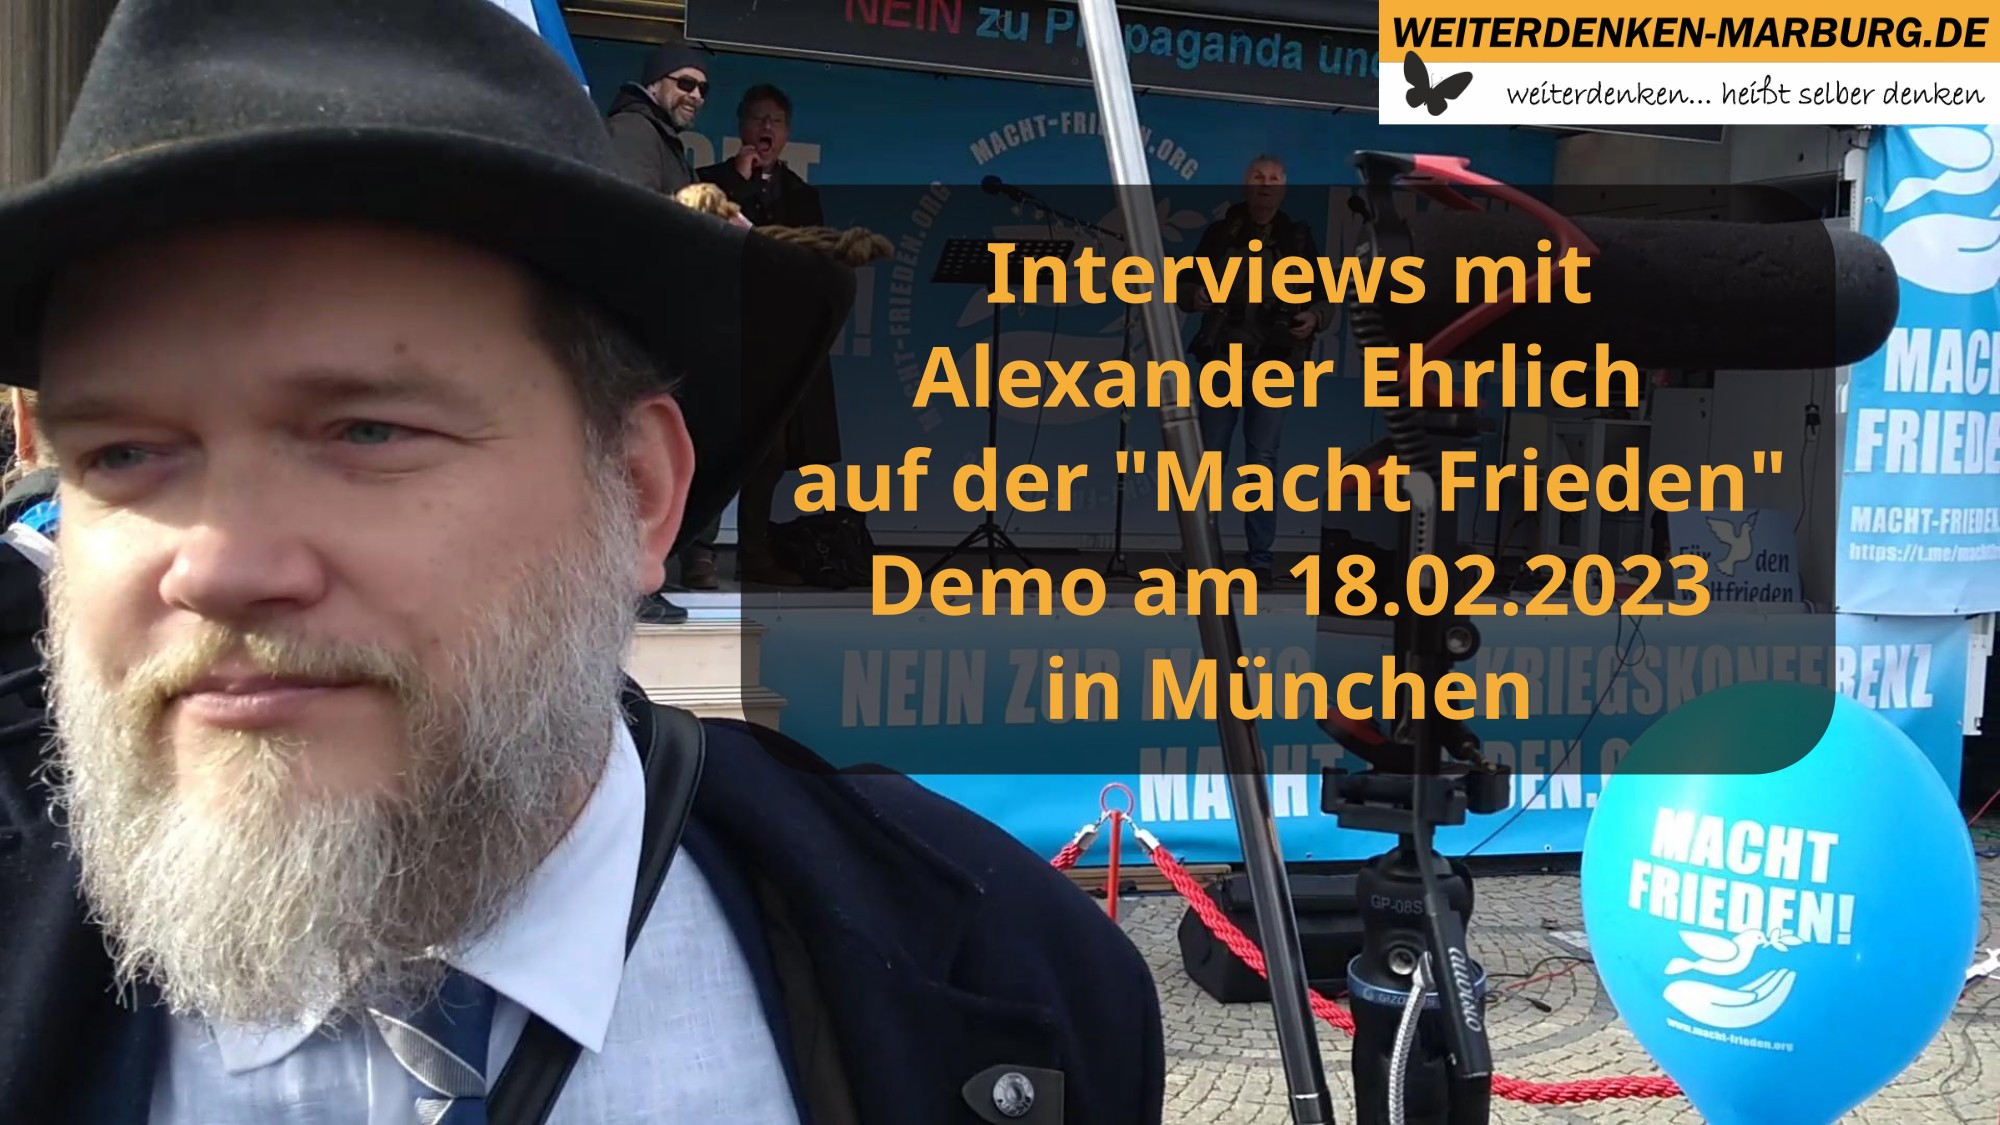 Interviews mit Alexander Ehrlich bei Macht Frieden! Demo in München am 18.02.2023